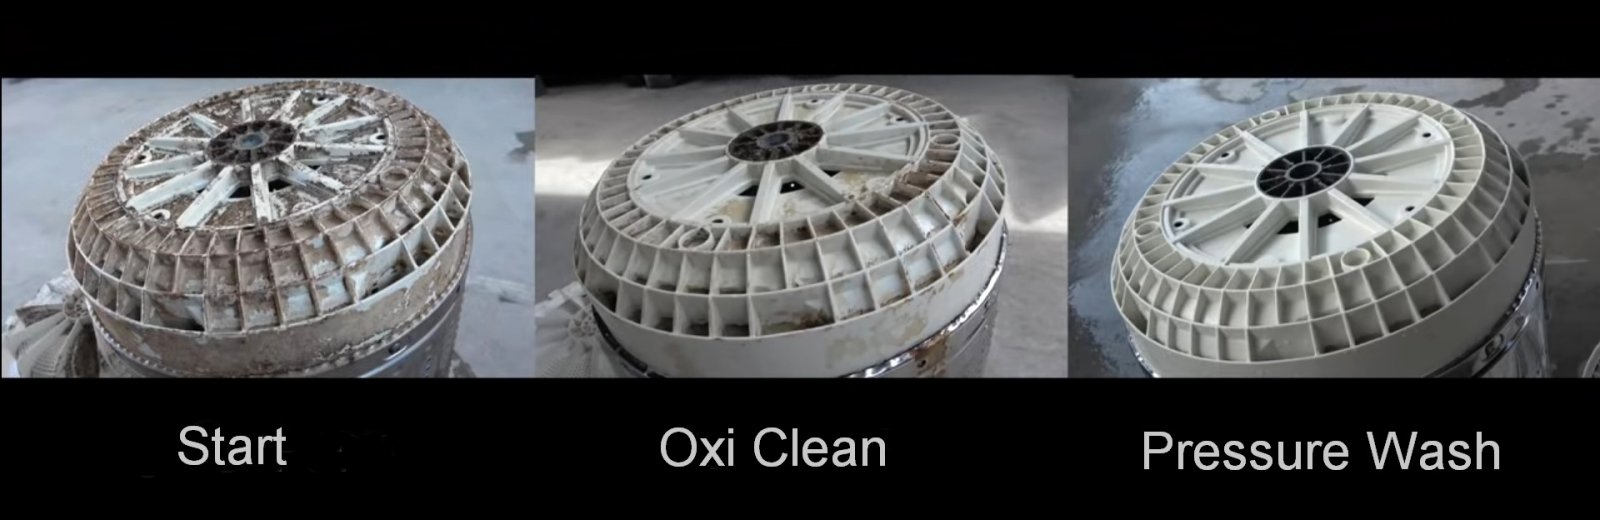 Start vs. Oxi clean vs. Hand wash_08.jpg